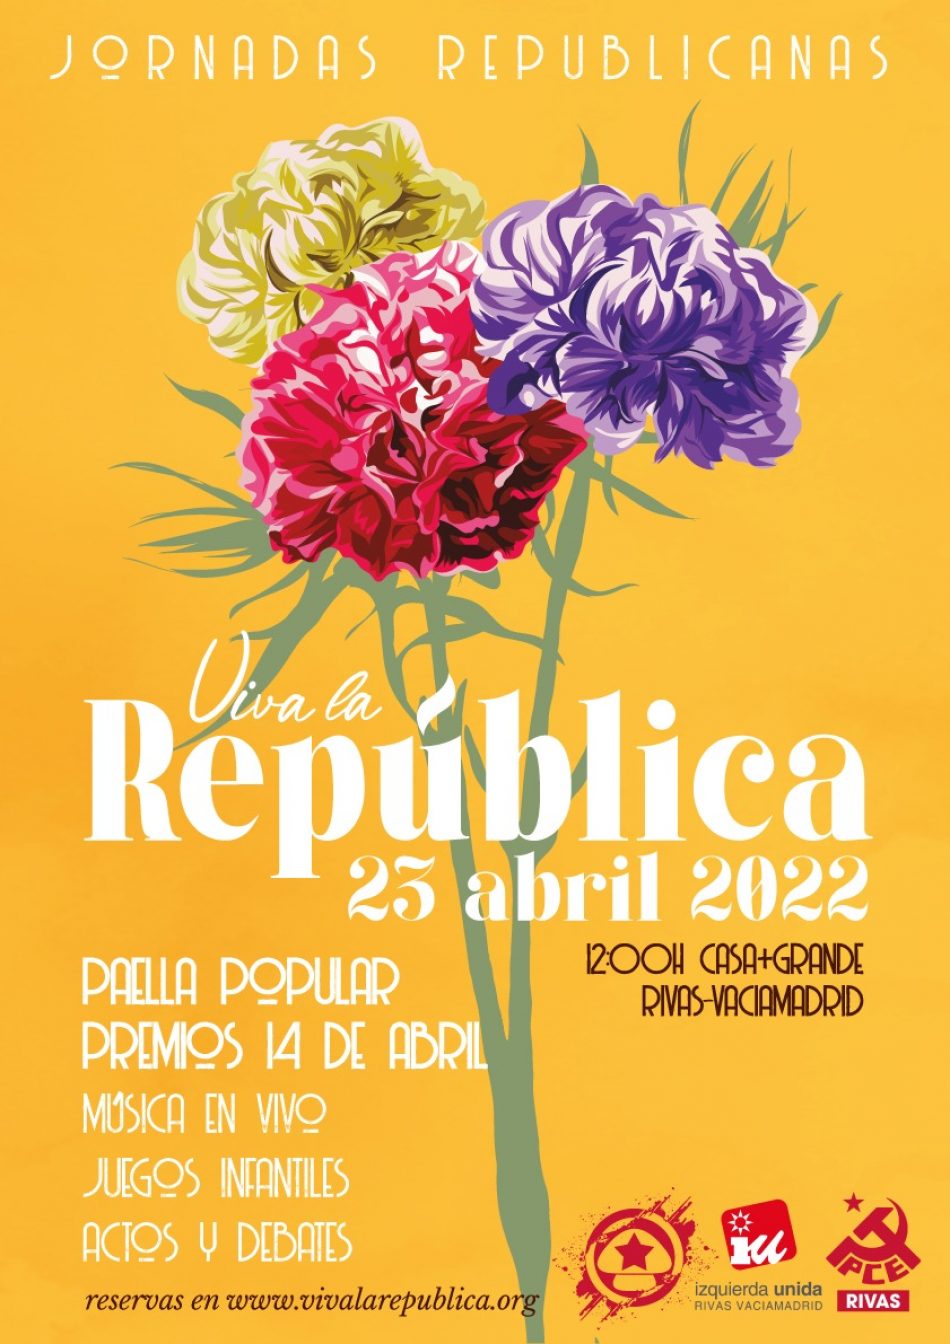 23 de Abril: Jornadas Republicanas en Casa+Grande, Rivas Vaciamadrid